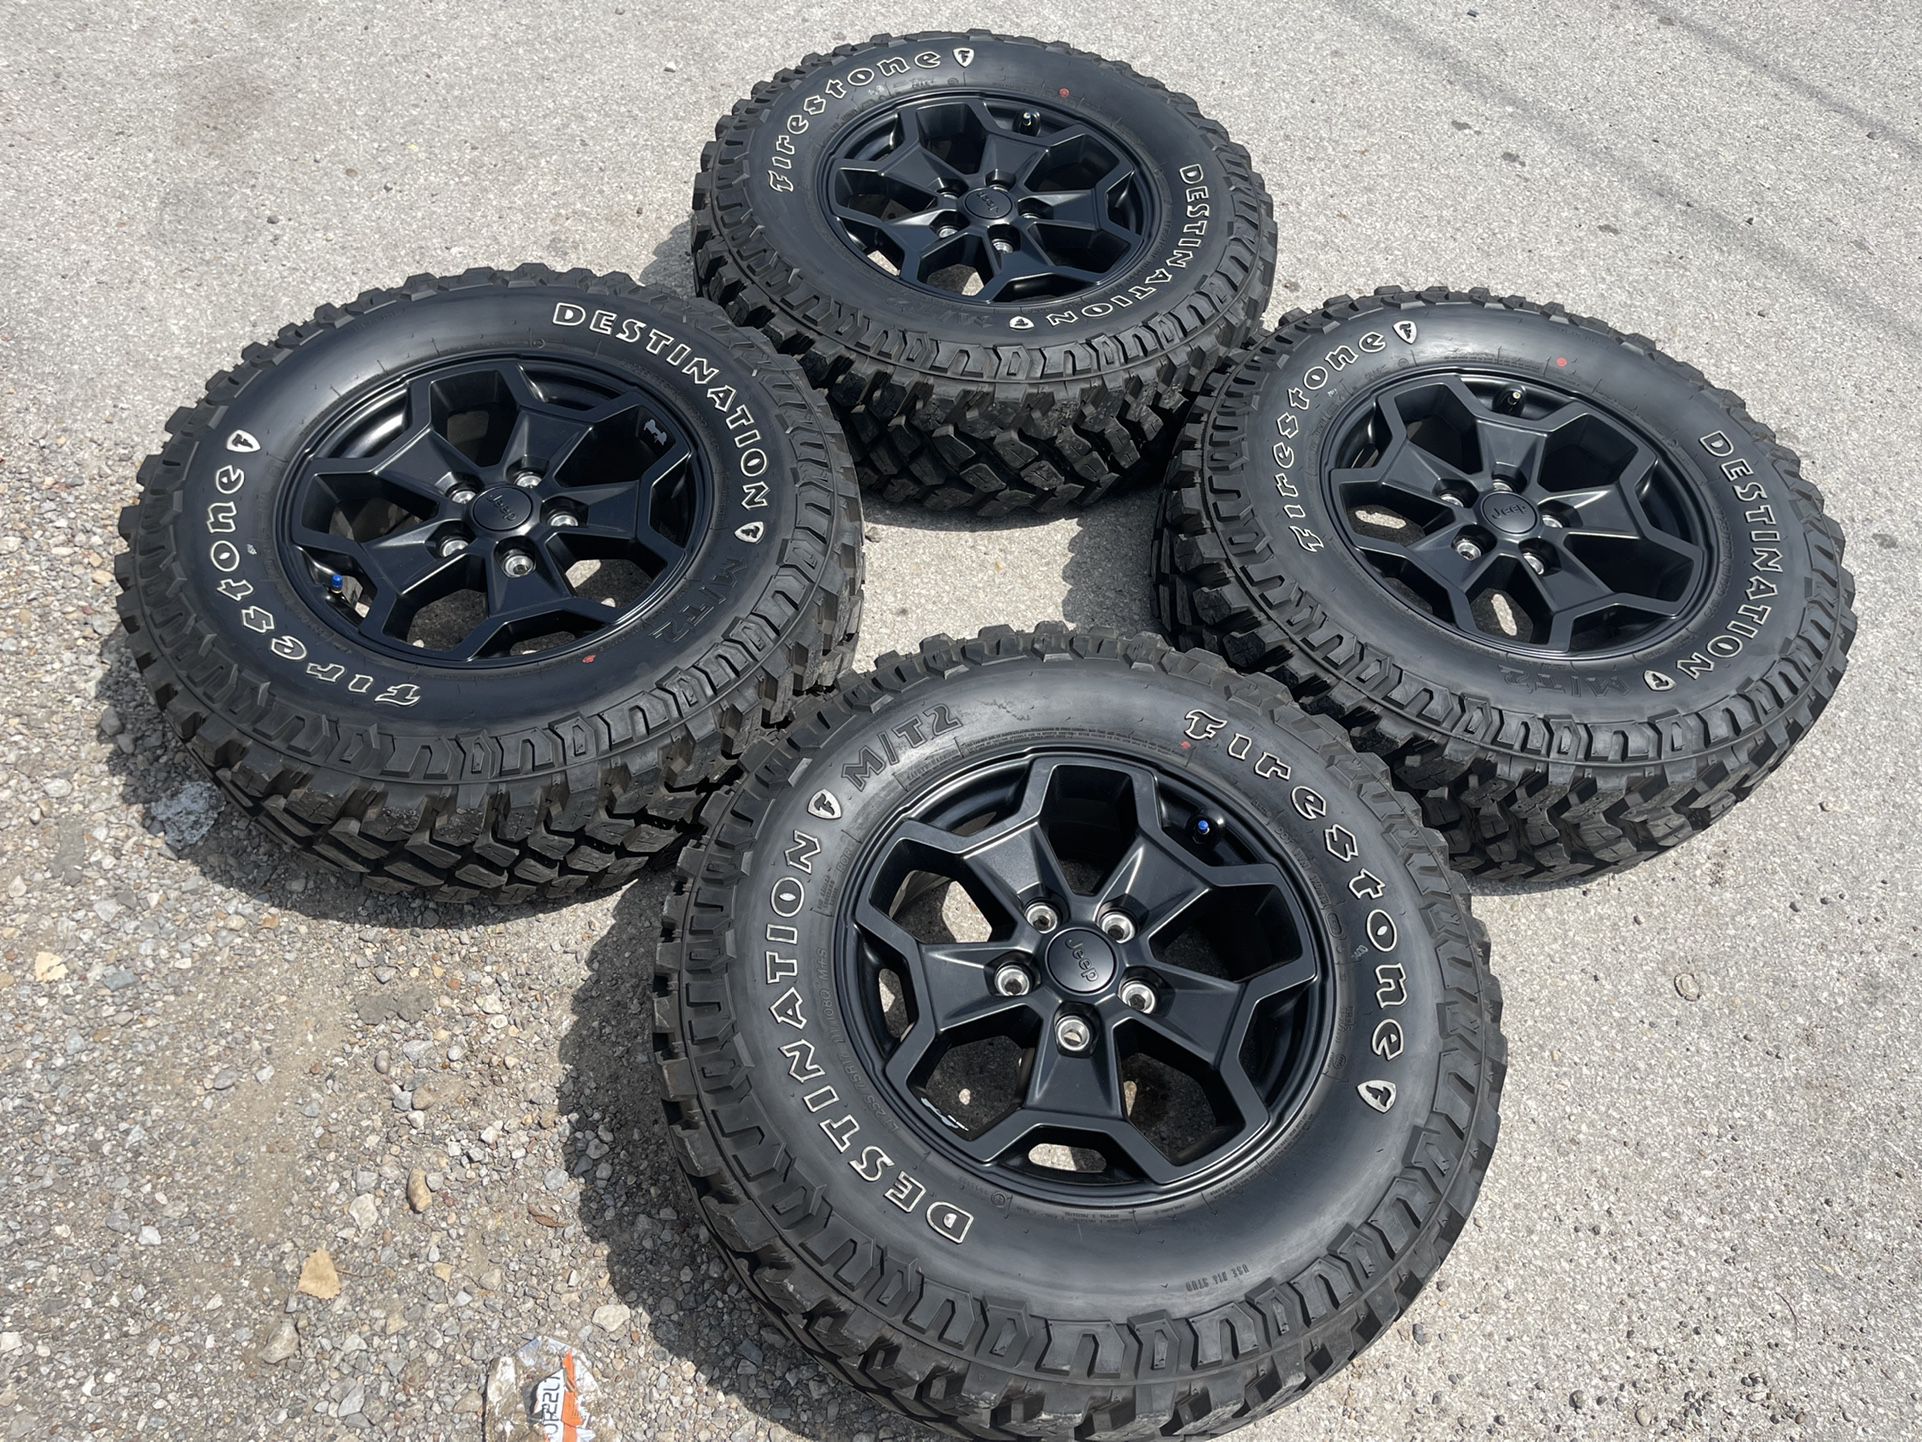 New 17” Black Jeep Rims And MT Tires 17 Wheels Gladiator JK Wrangler JL Rubicon Fuel Fuels Motometal Moto Metal Metals XD X D rockstars American force